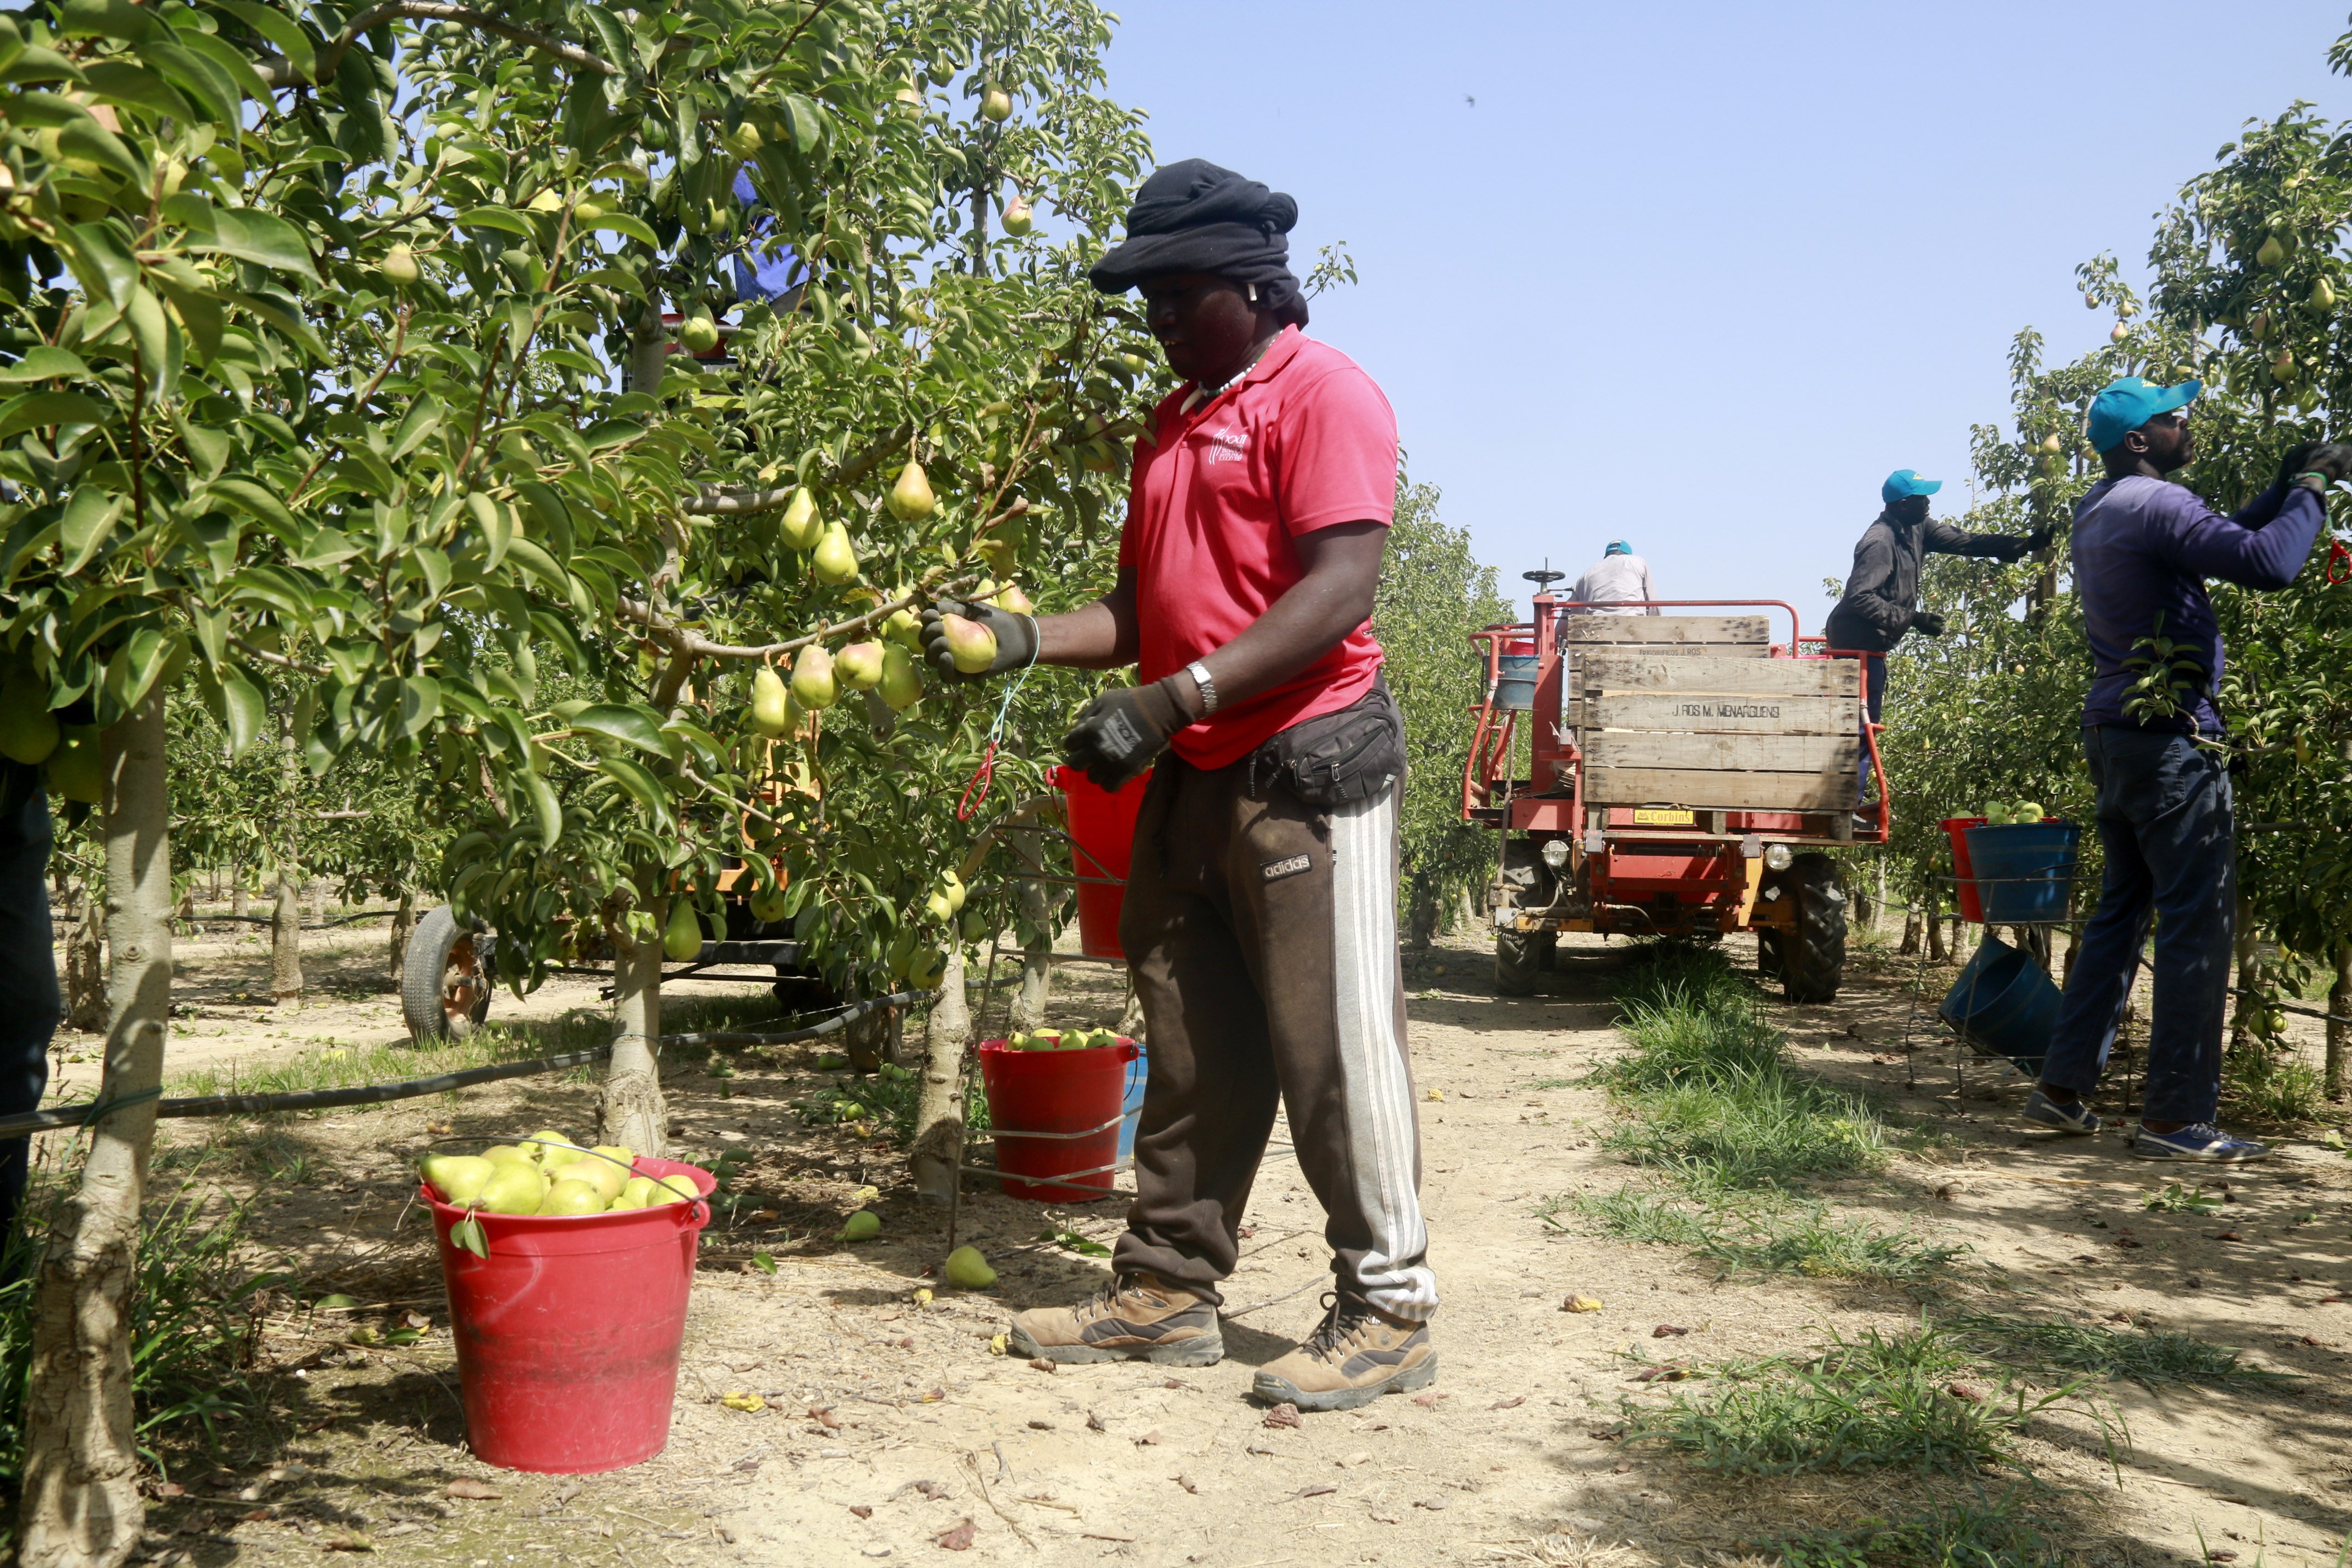 El calor y la falta de mano de obra, además de la sequía, complican la vida a los agricultores en Ponent